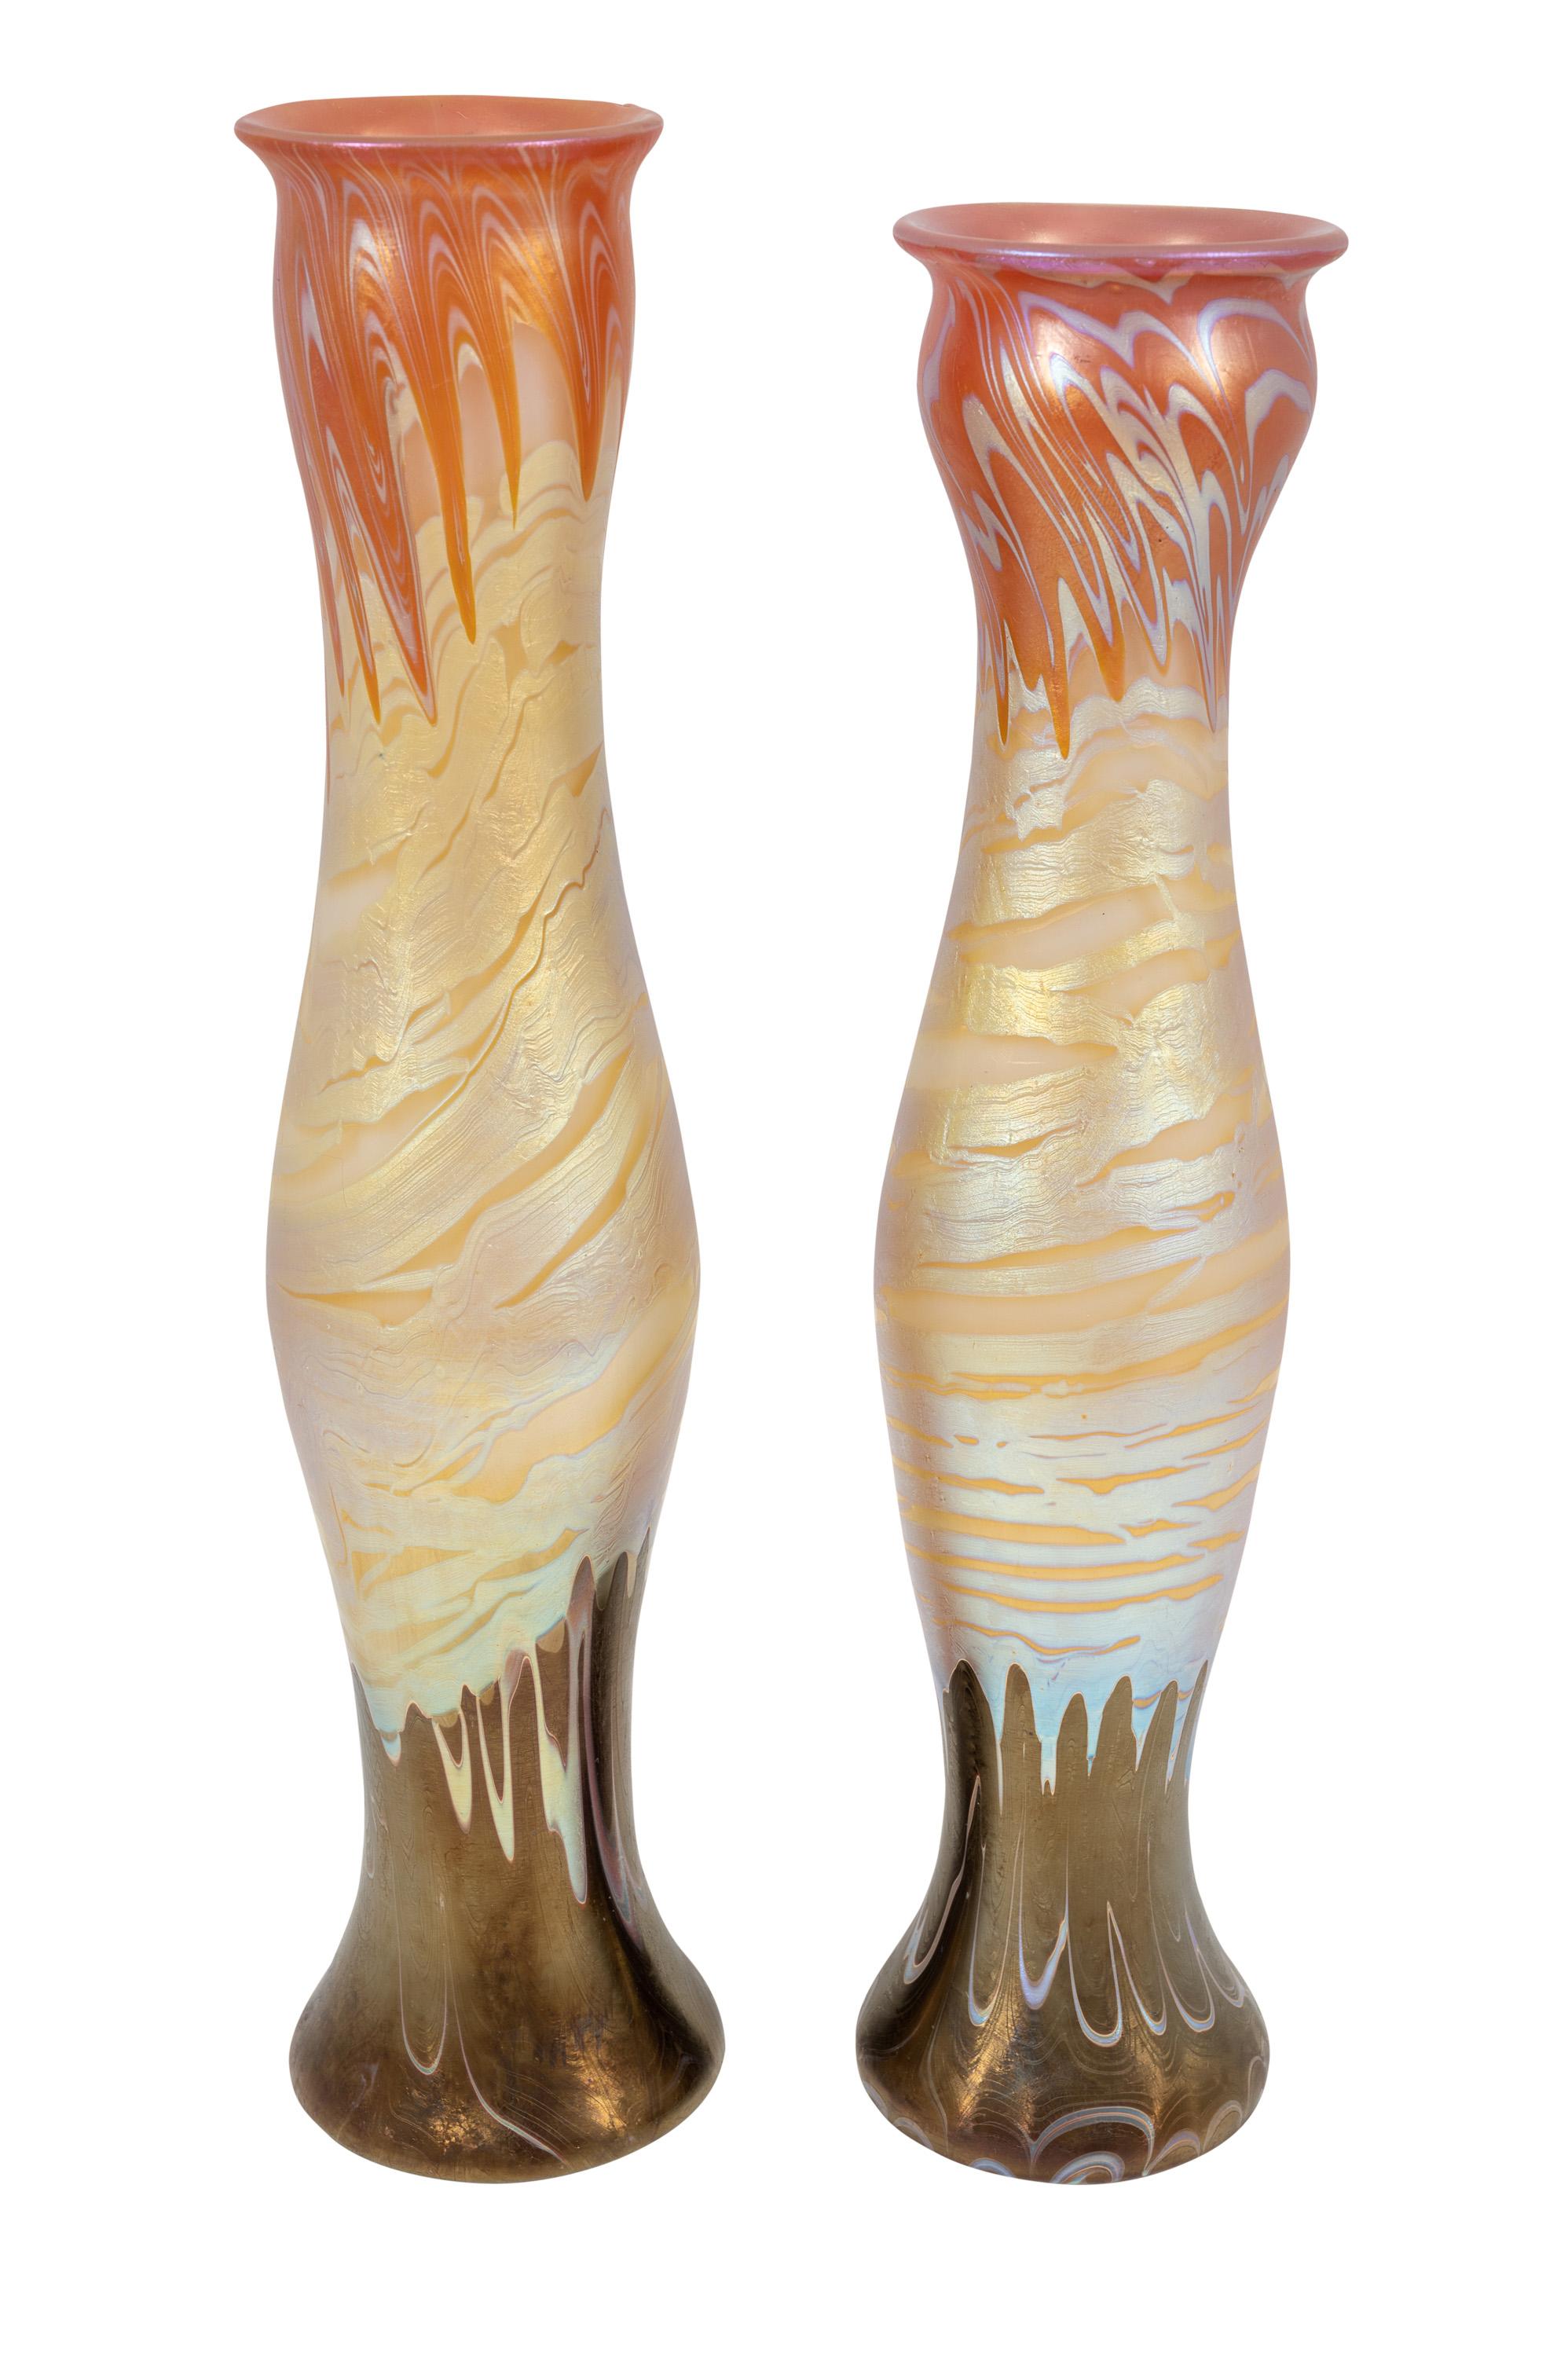 Austrian Pair of Vases Loetz PG 358 circa 1900 Bohemian Glass Art Nouveau For Sale